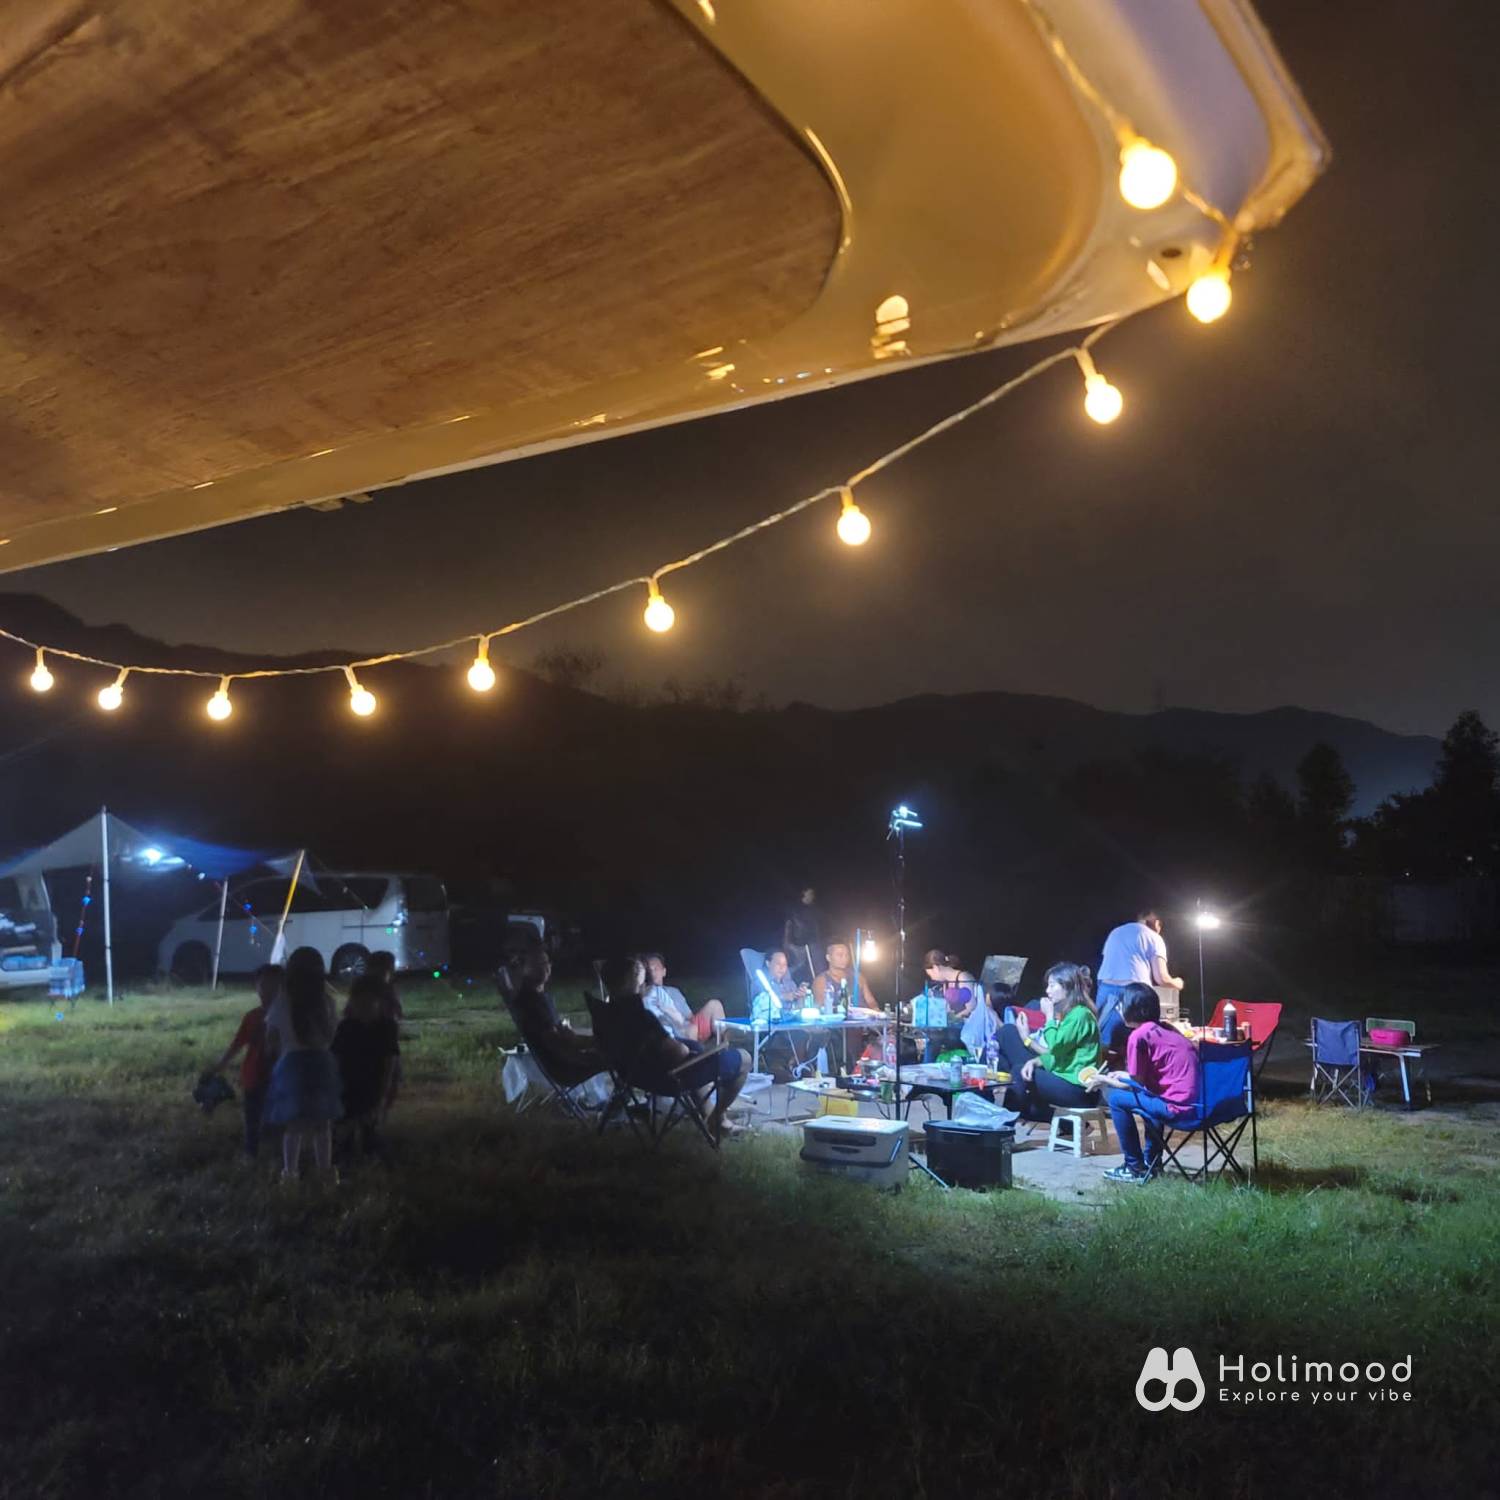 綠行鳥 - 大棠Car Camping + Glamping & 紅葉營地 【Starry Camping Night】 Bring Your Own Tent 6